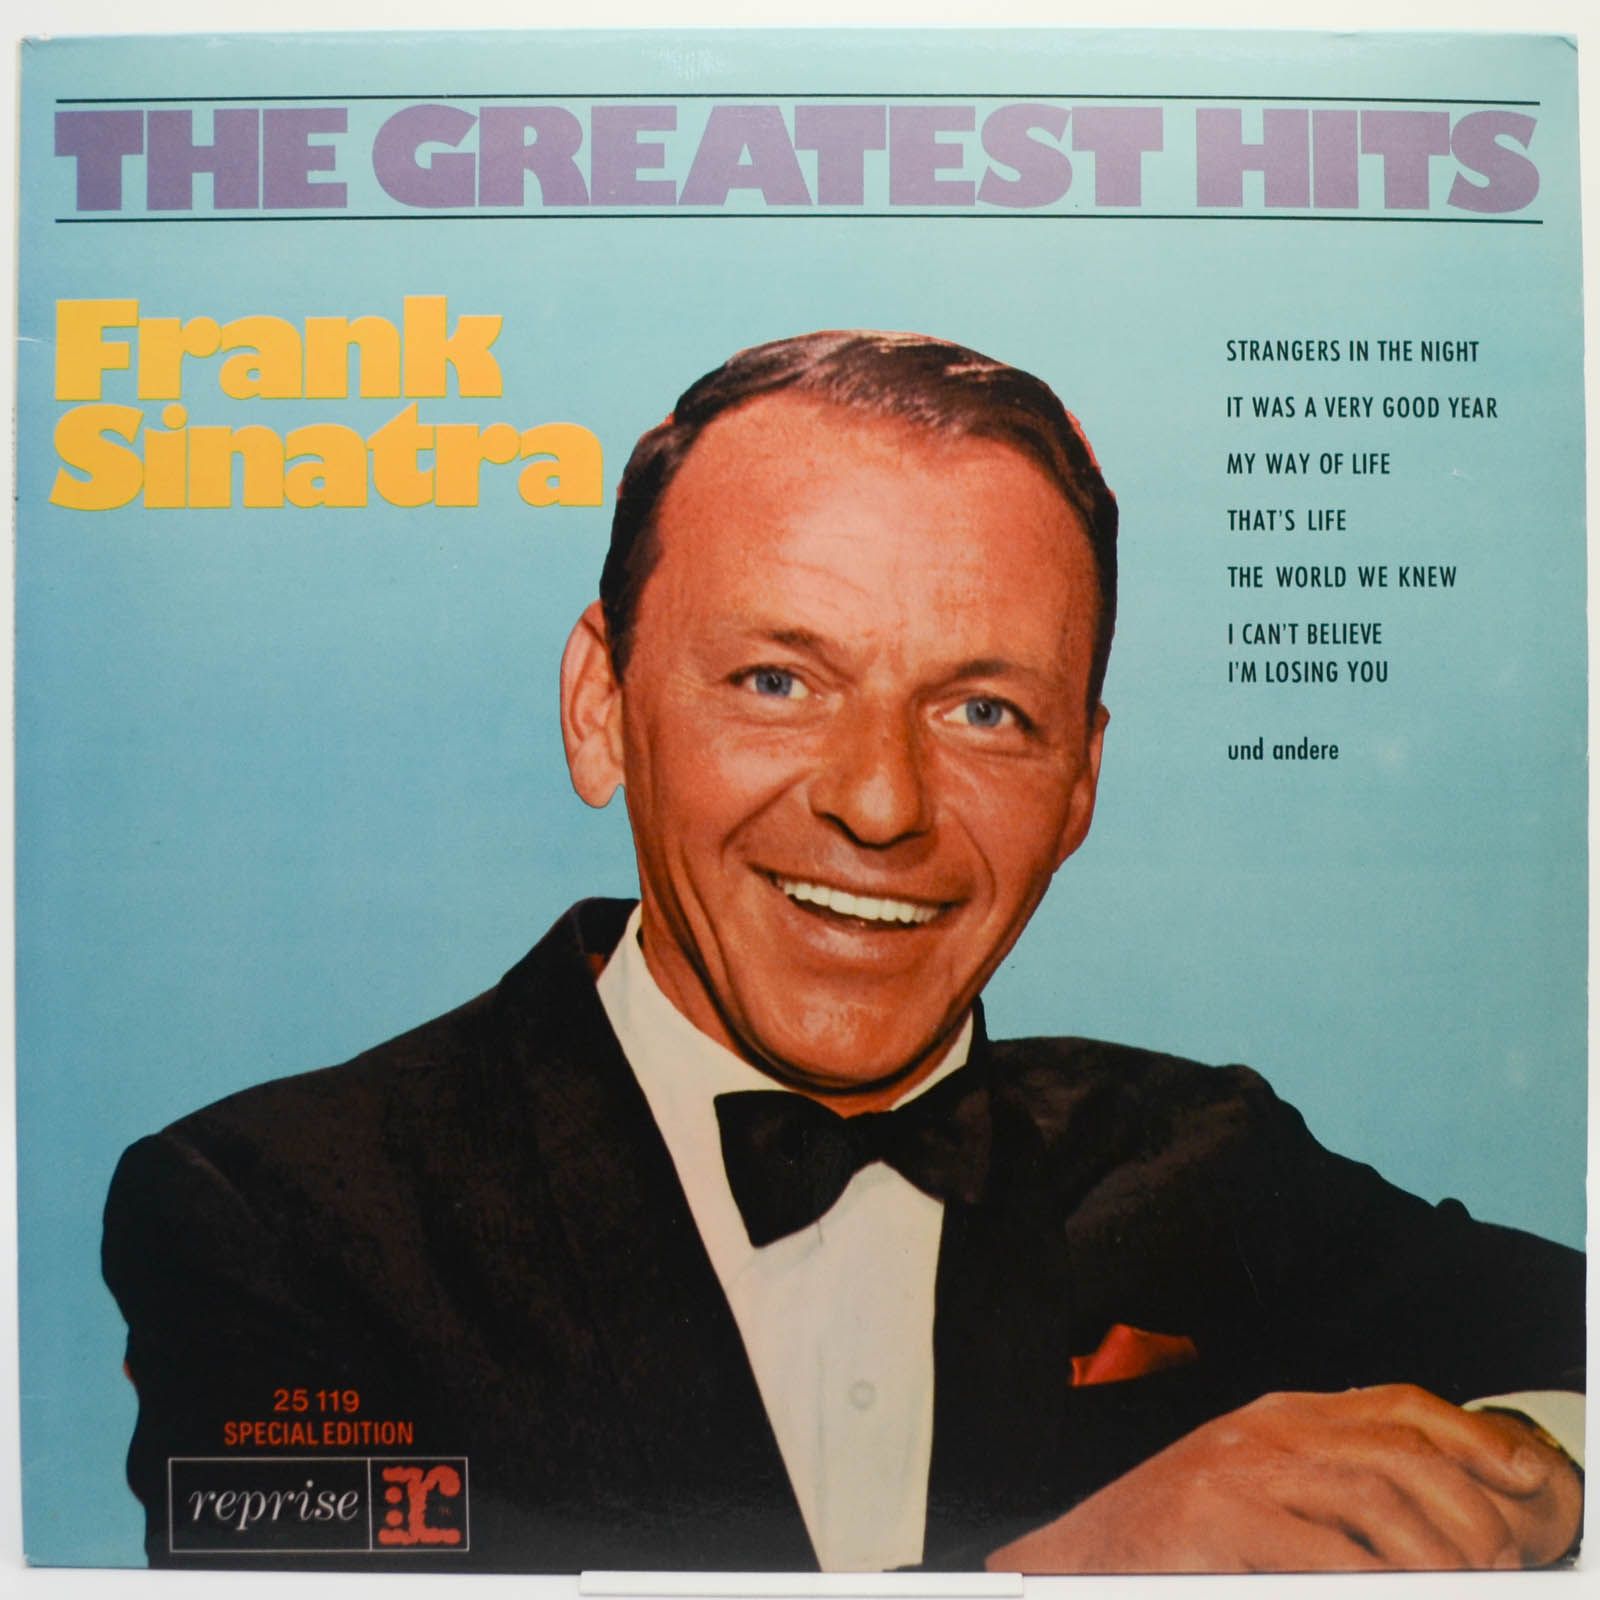 Frank Sinatra — The Greatest Hits, 1971